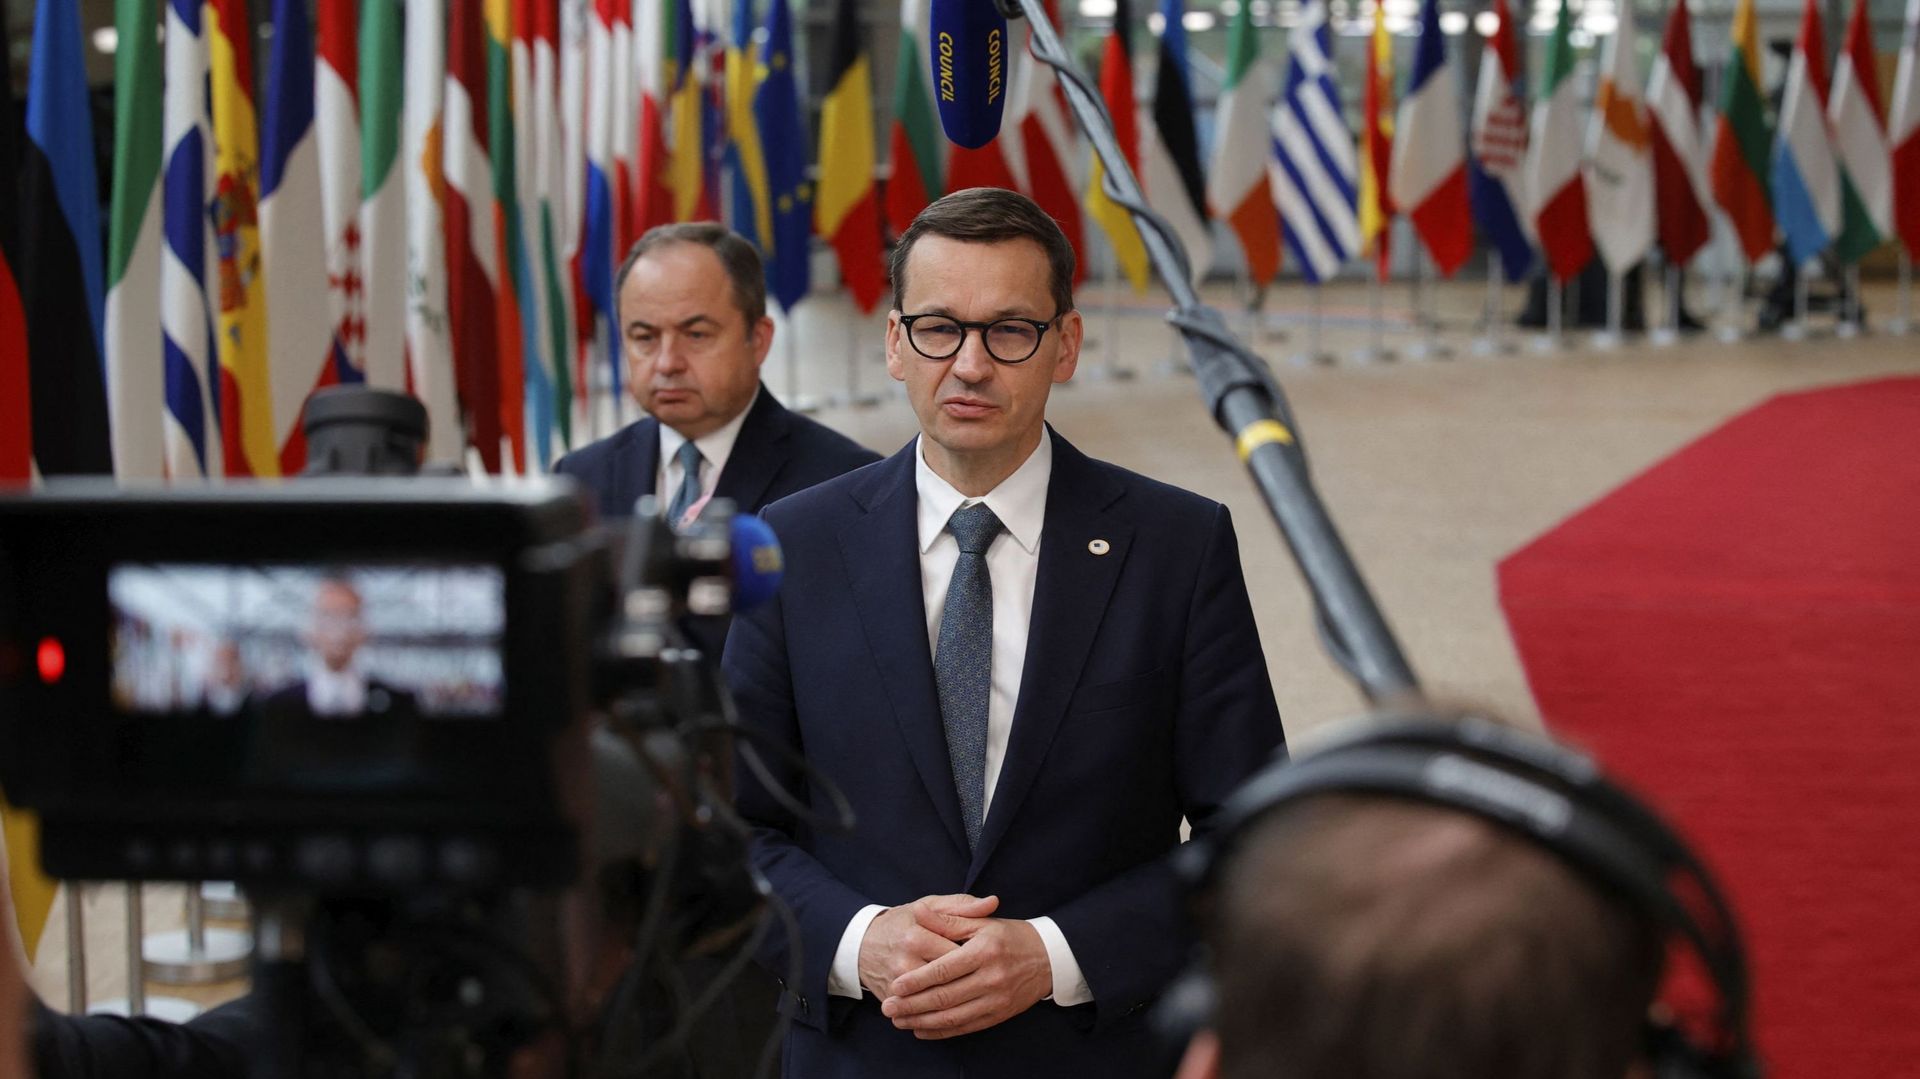 la-justice-polonaise-rejette-une-partie-de-la-convention-europeenne-des-droits-de-l-homme